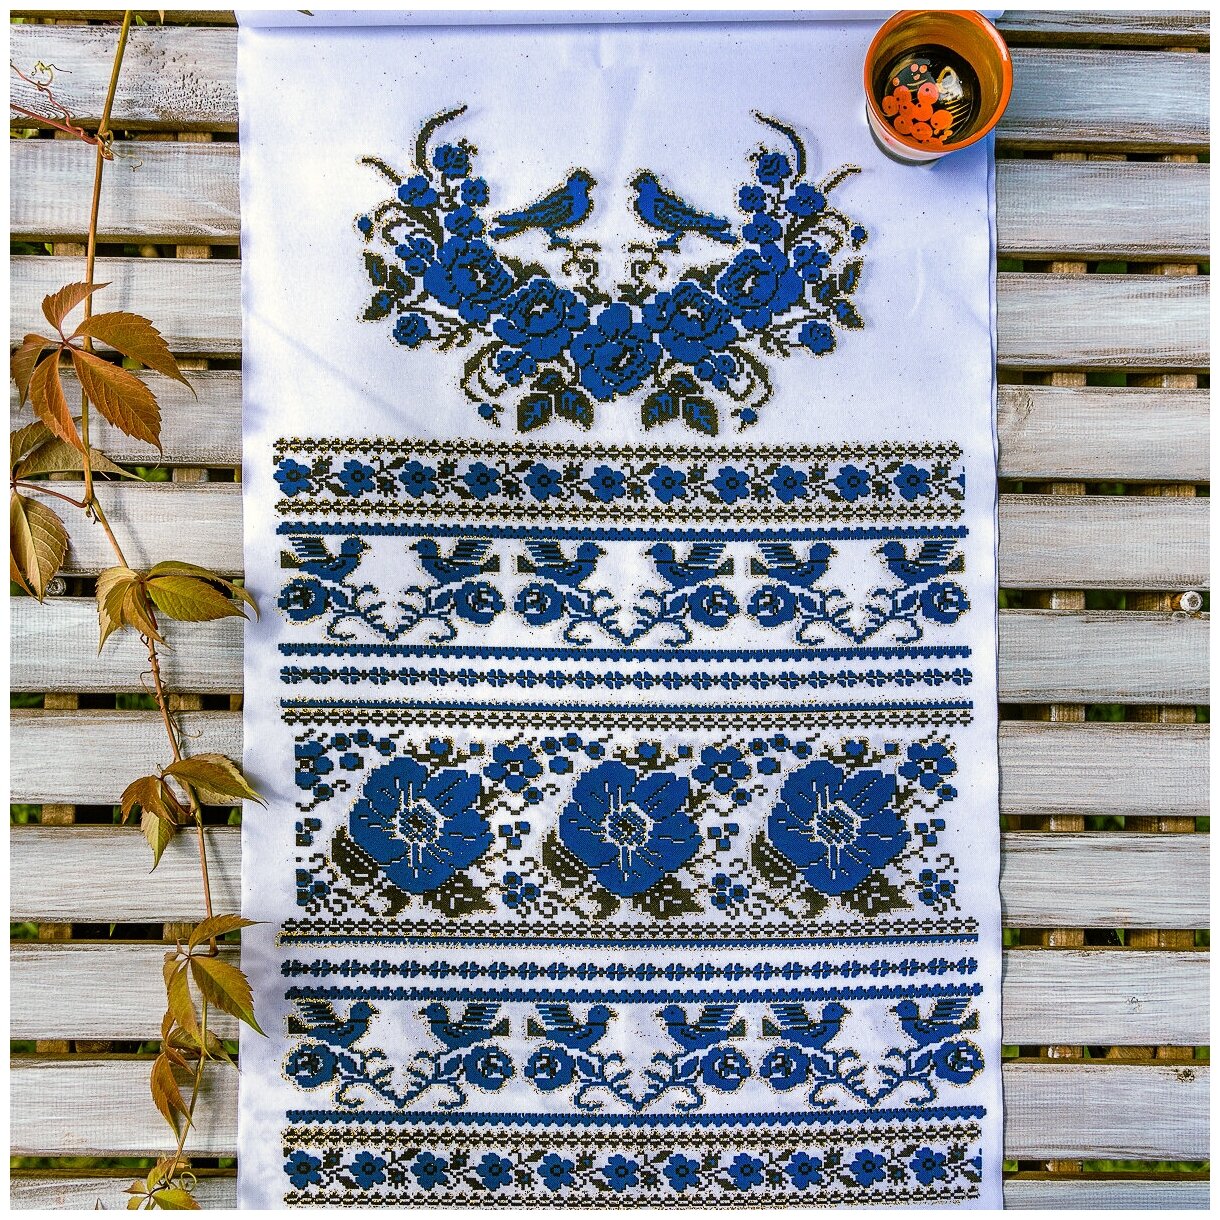 Традиционный свадебный рушник для хлебосольной встречи новоборачных белого цвета с цветочными узорами и птицами в синей и белой гамме